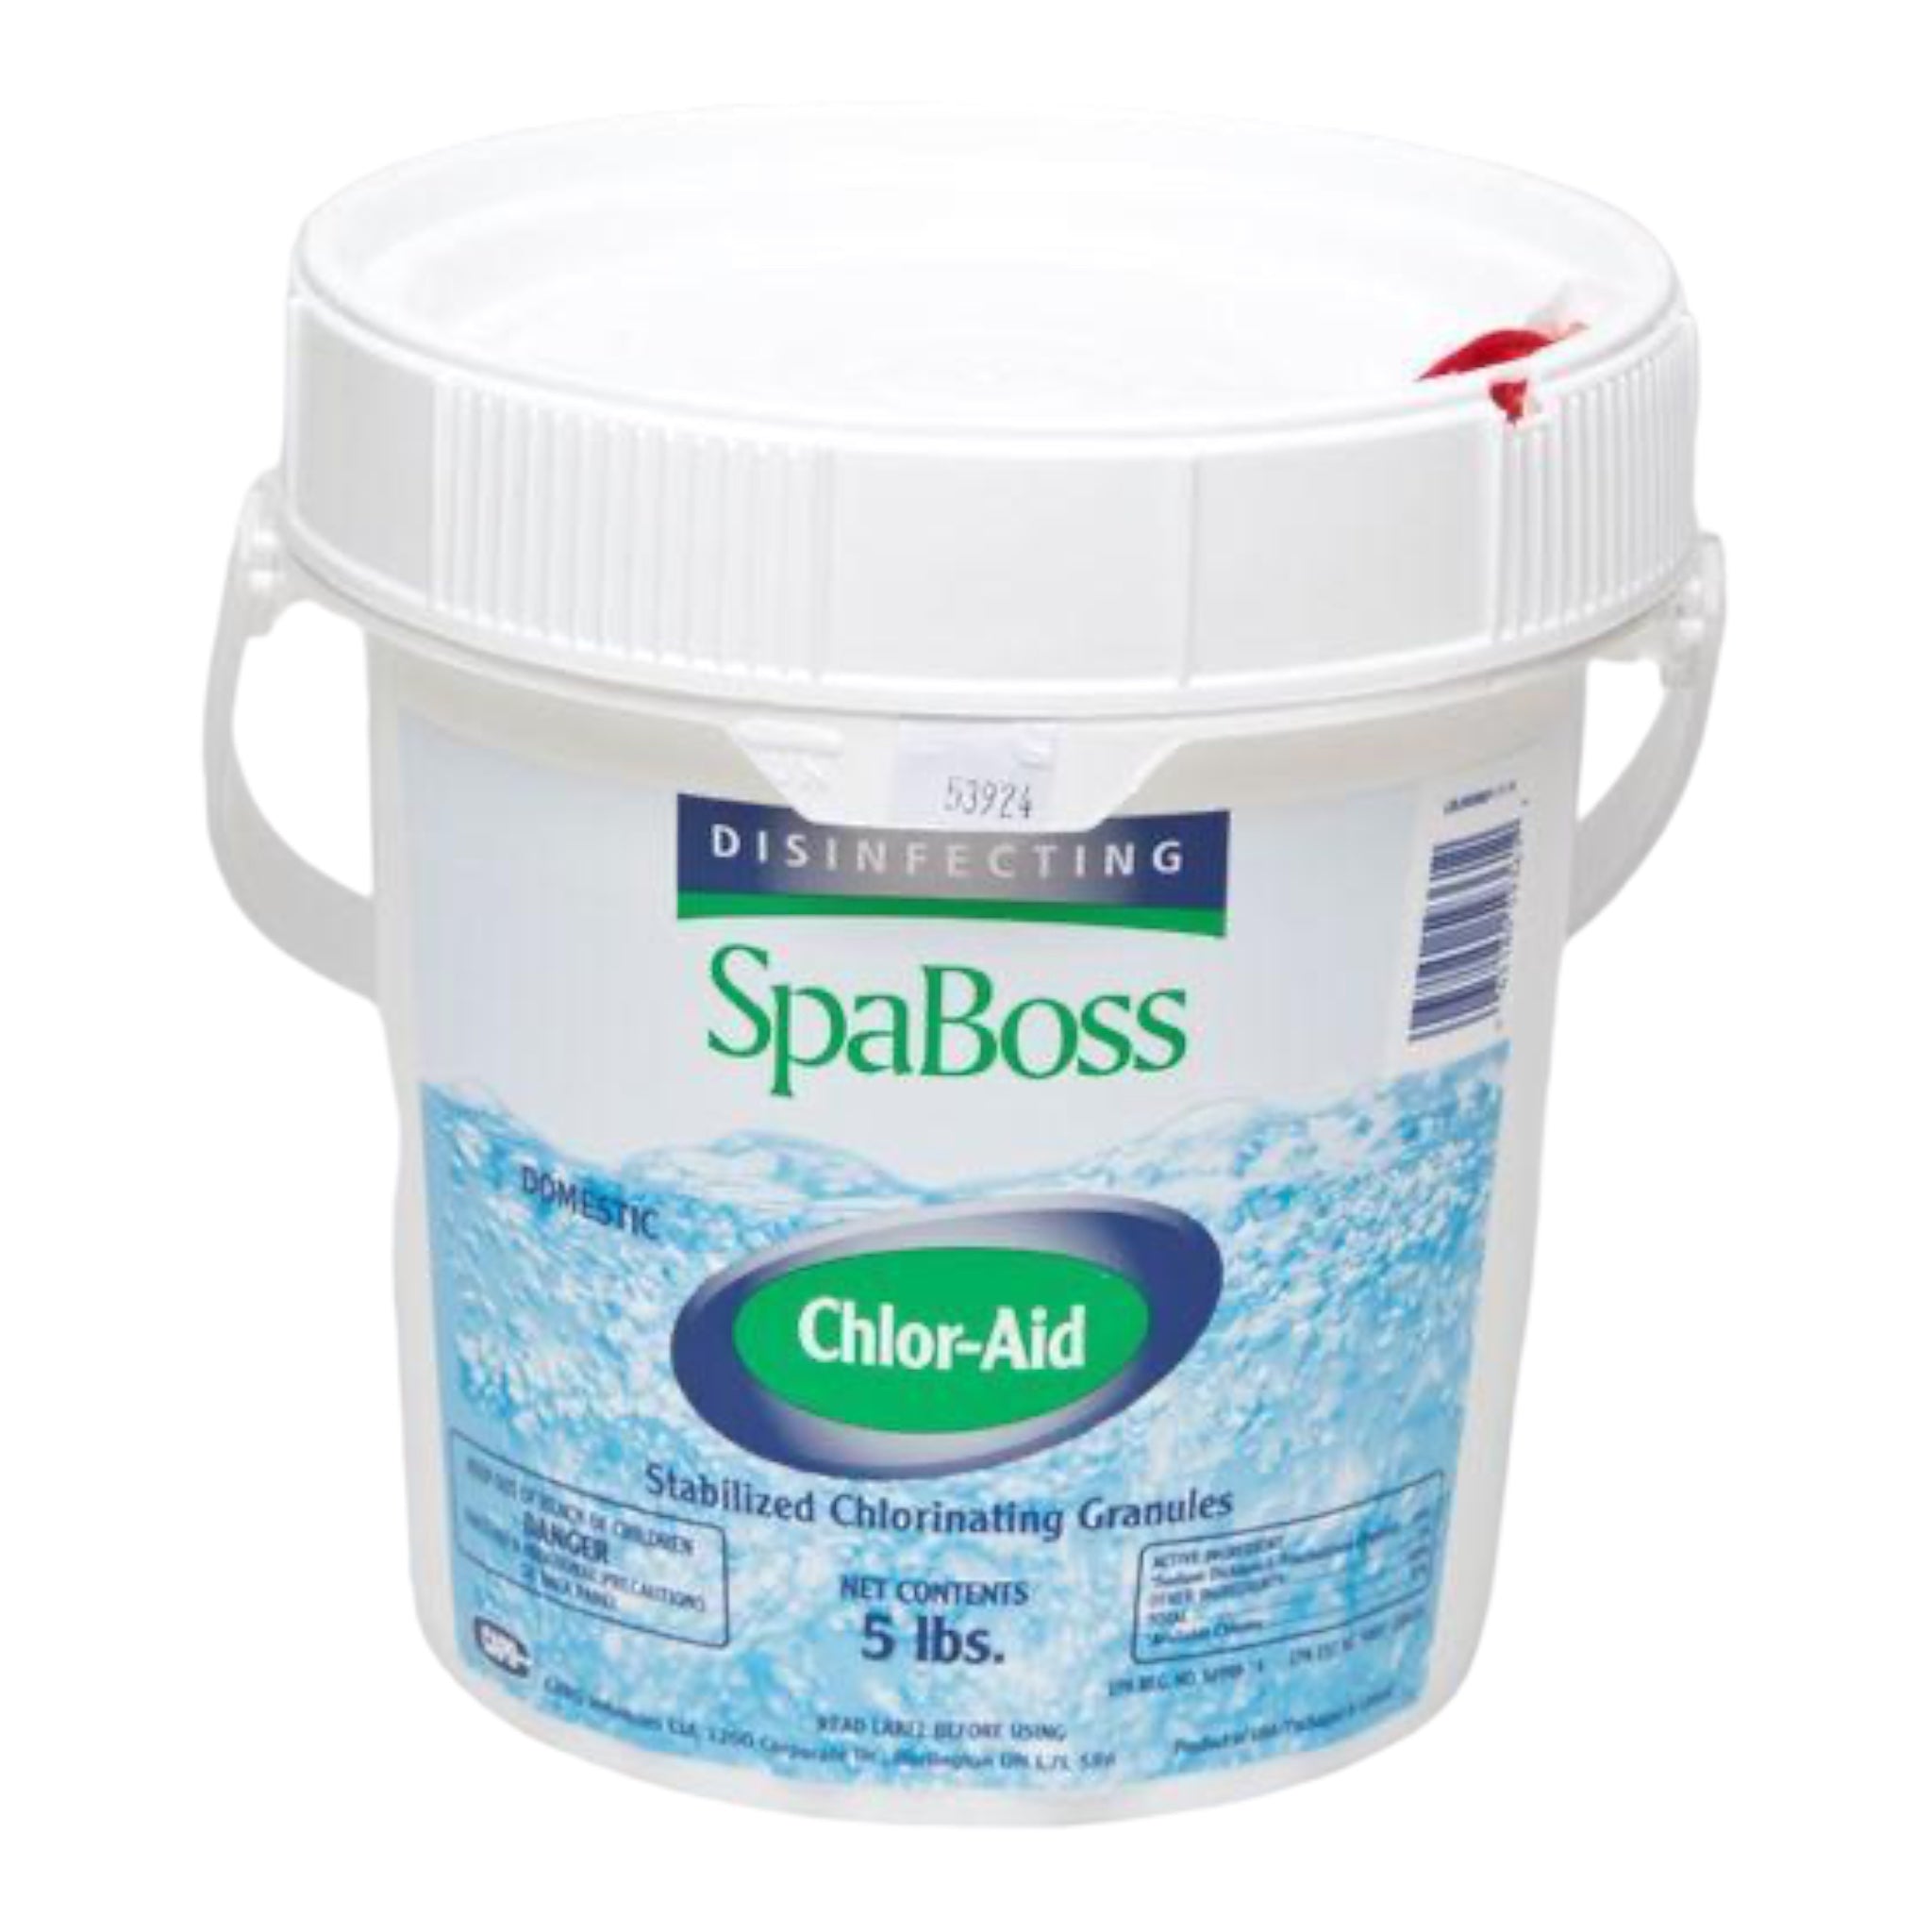 SpaBoss Chlor-Aid 5 lbs.